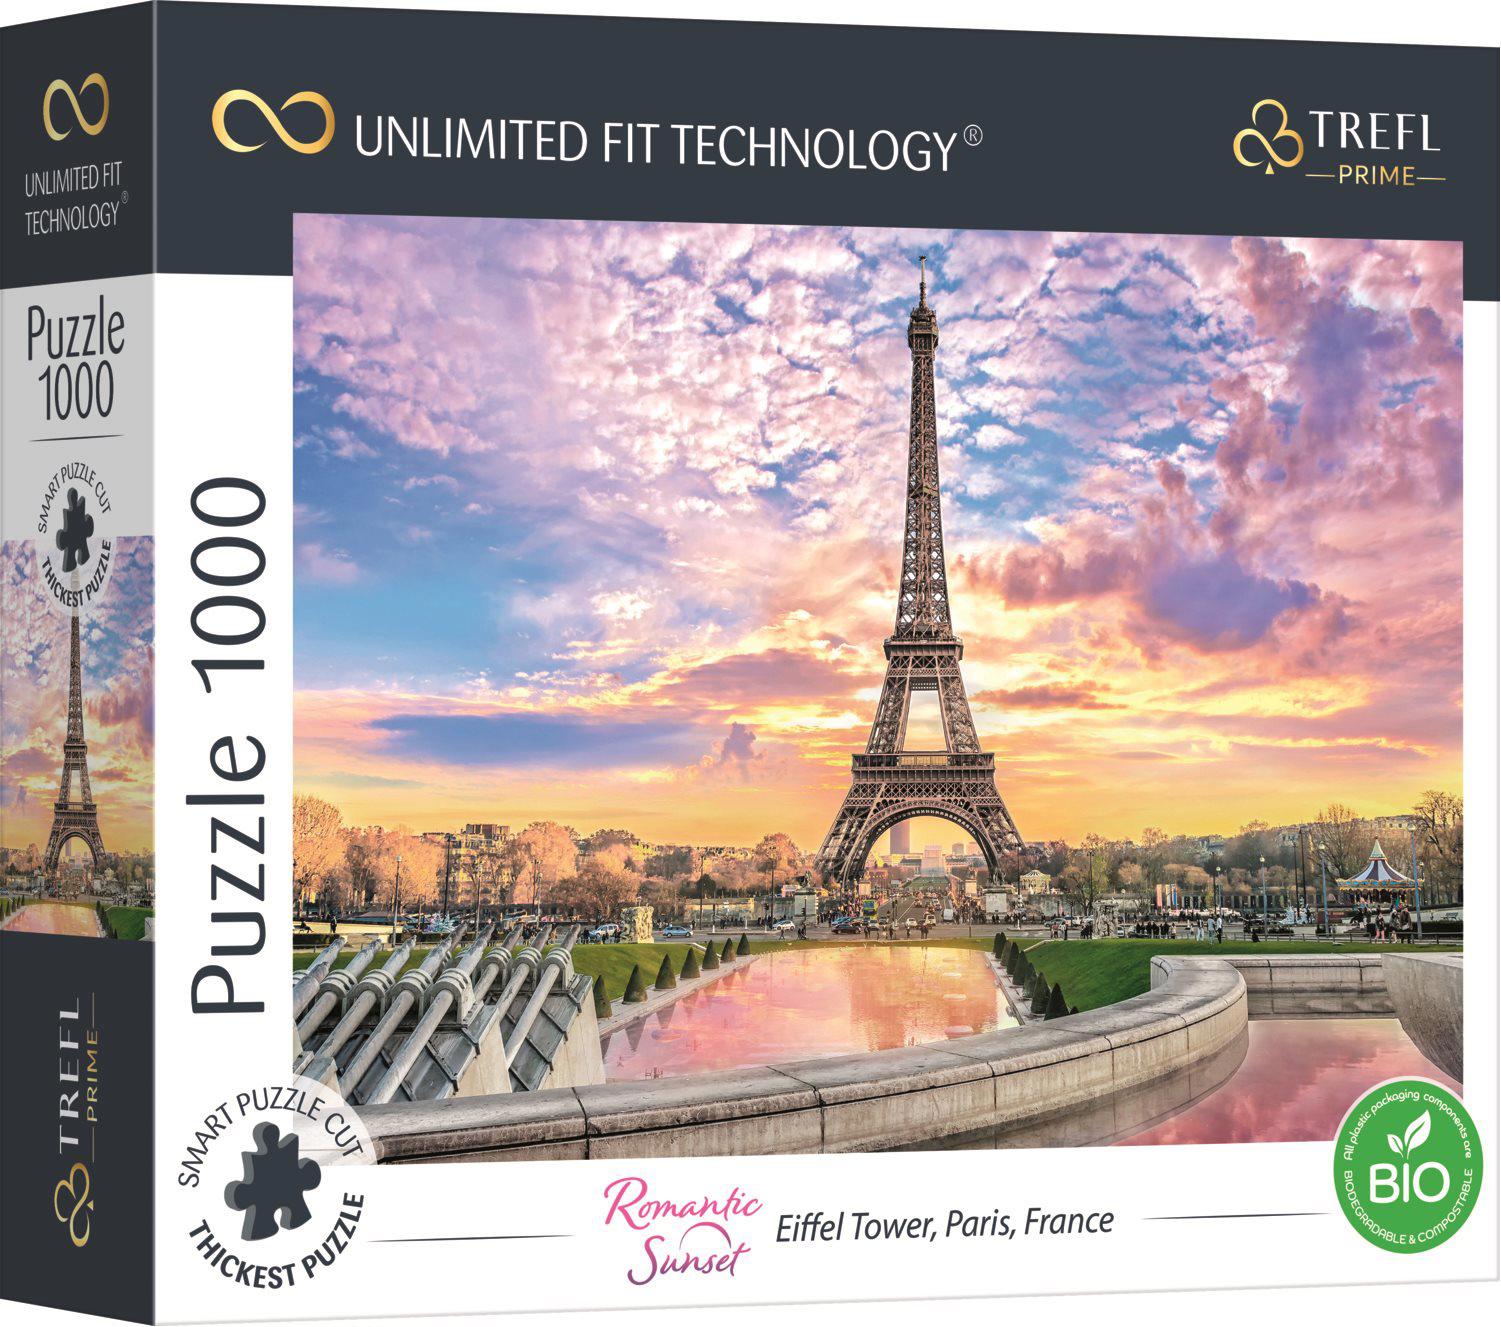 Puzzle Eiffel Tower, Paris, France UFT